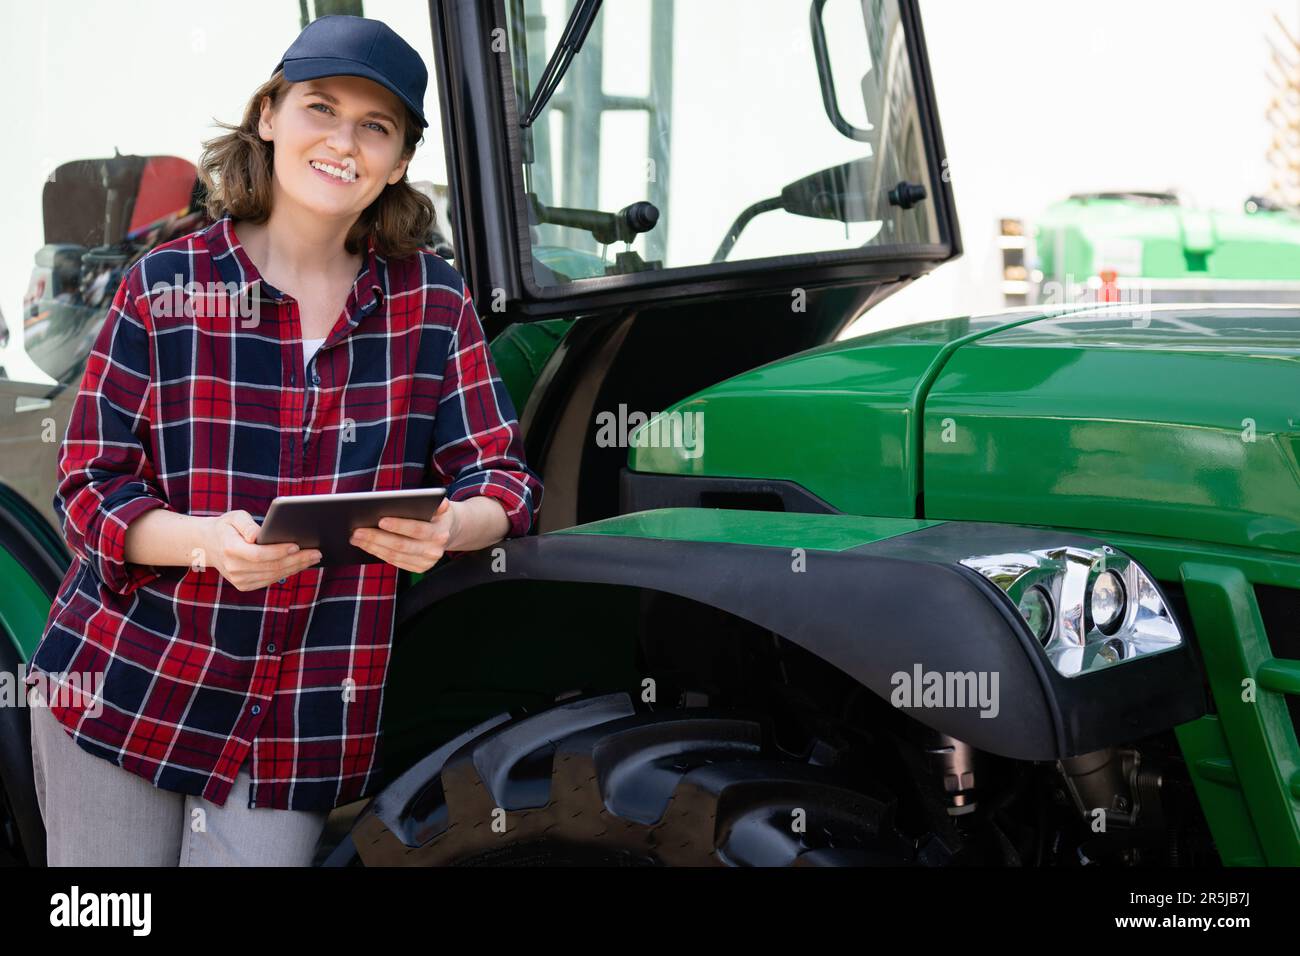 Femme agriculteur avec une tablette numérique sur le fond d'un tracteur agricole Banque D'Images